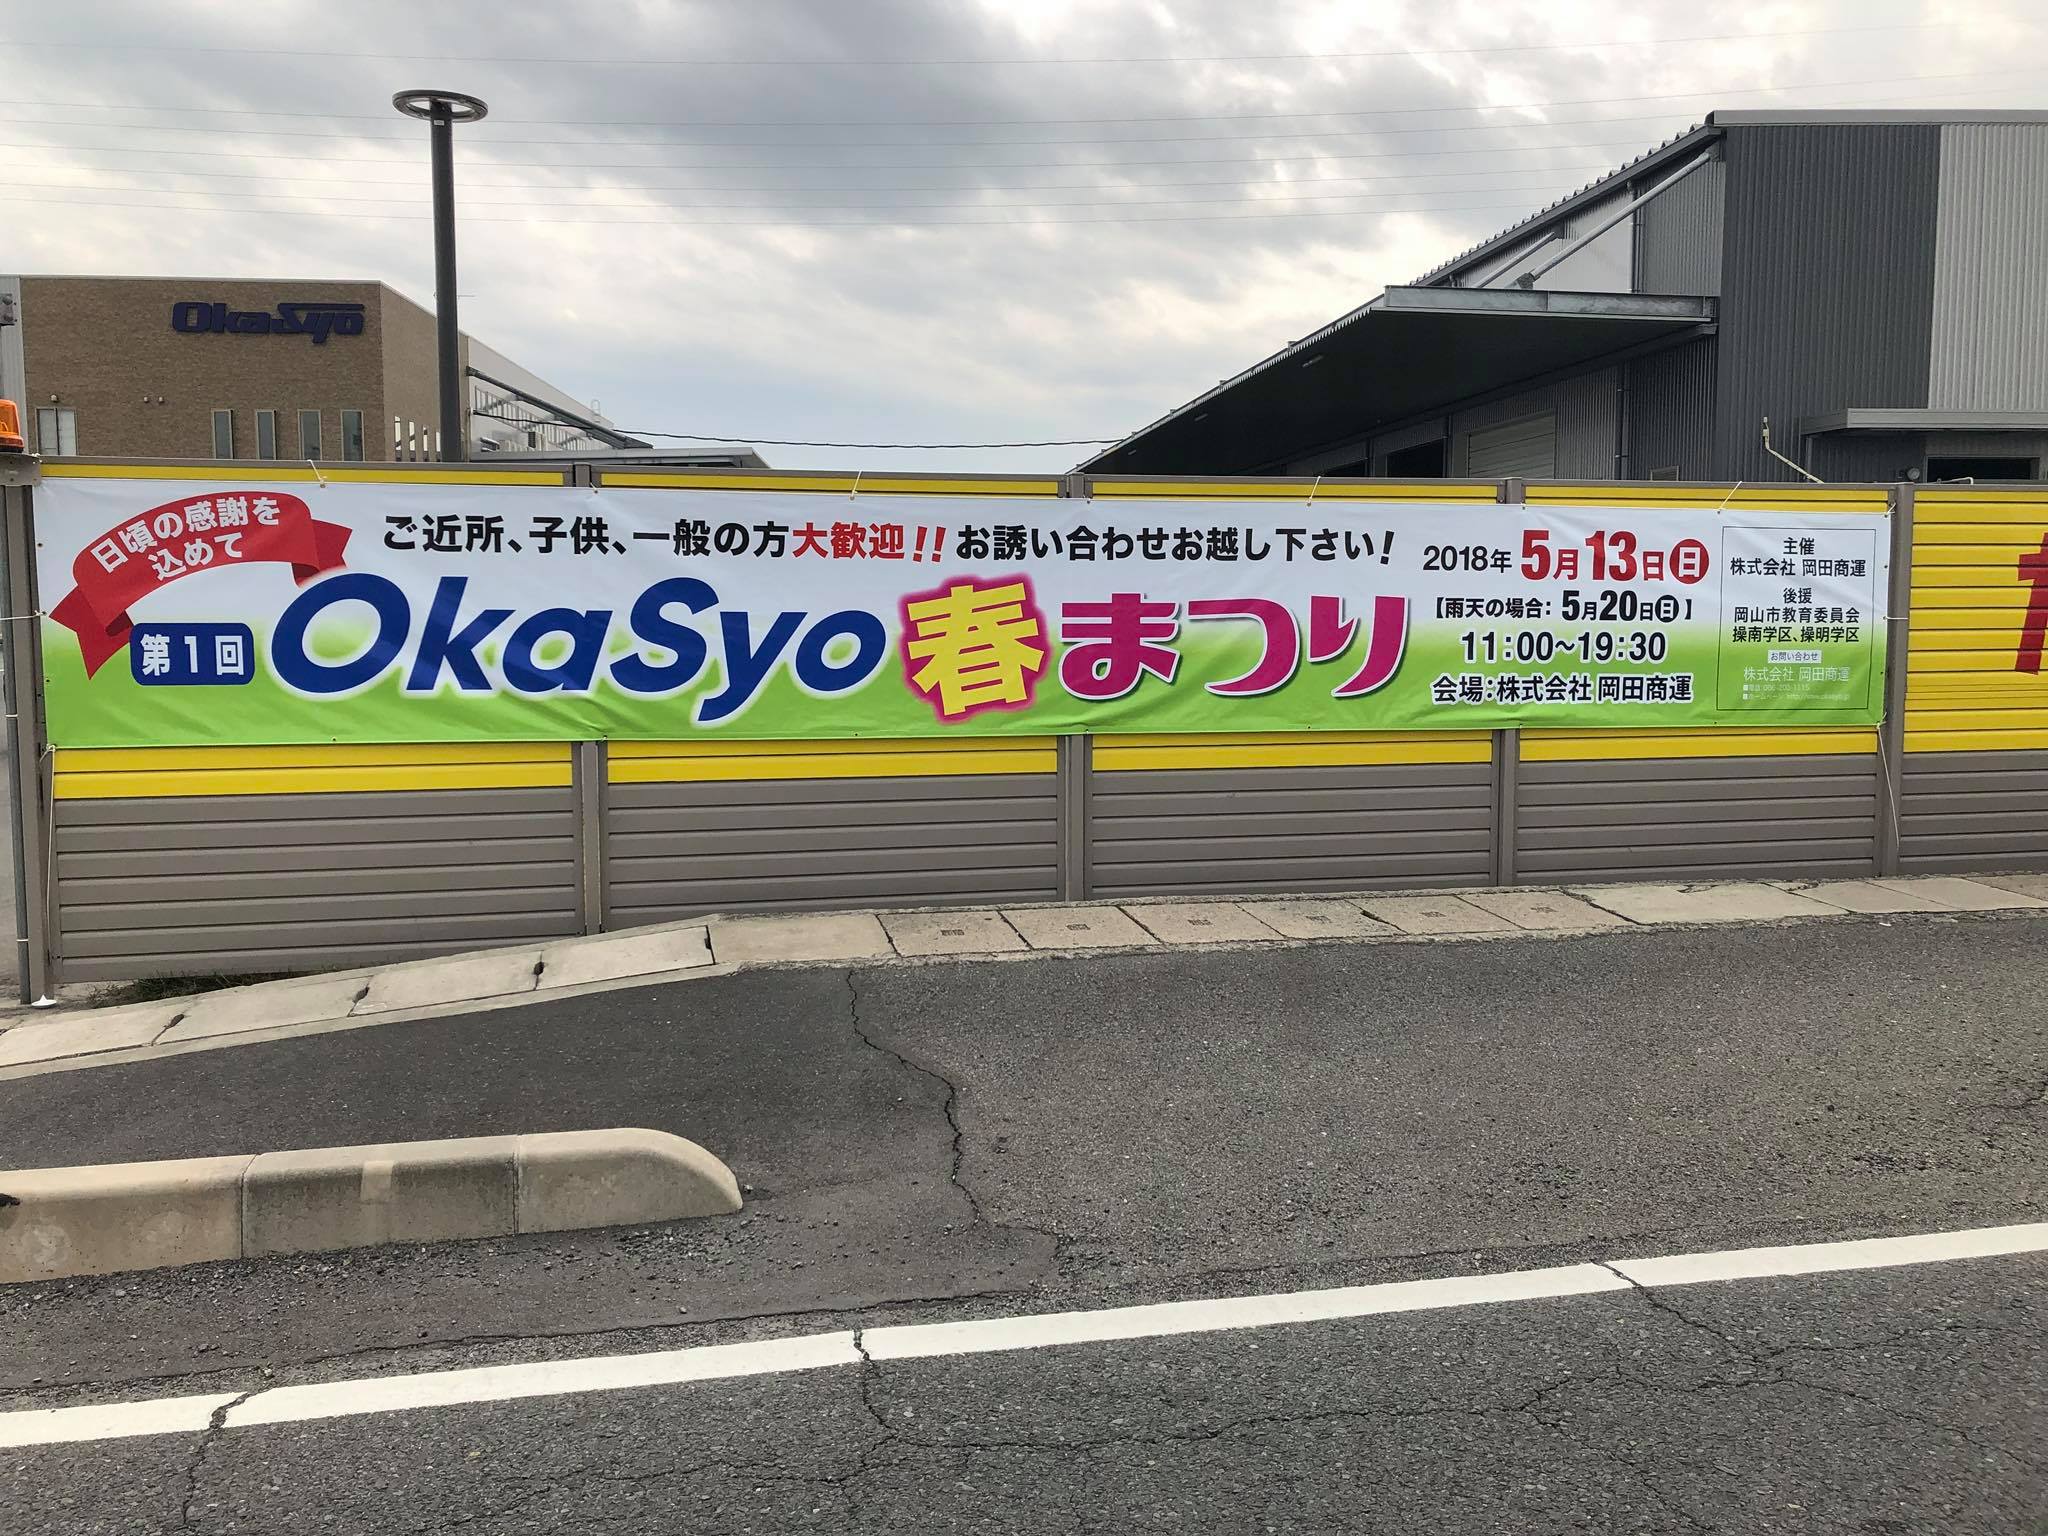 岡田商運 - 第1回okasyo準備着々と進んでおります。... | Facebook